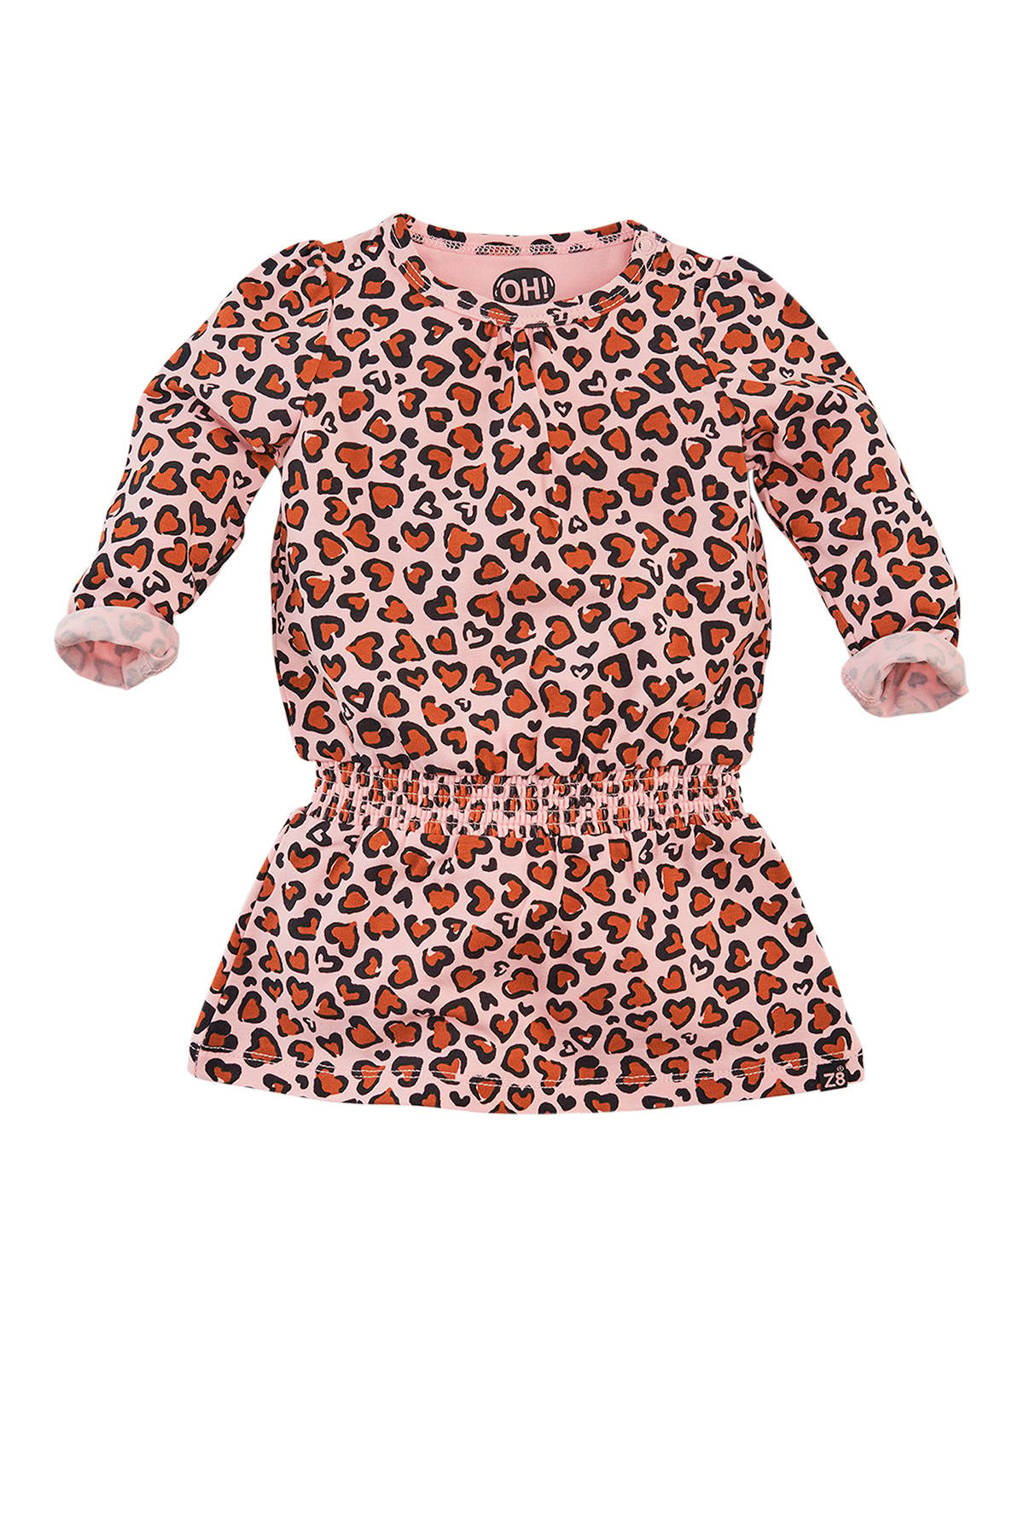 volume Montgomery mezelf Z8 newborn baby jurk Riga met panterprint lichtroze/zwart/oranje | wehkamp